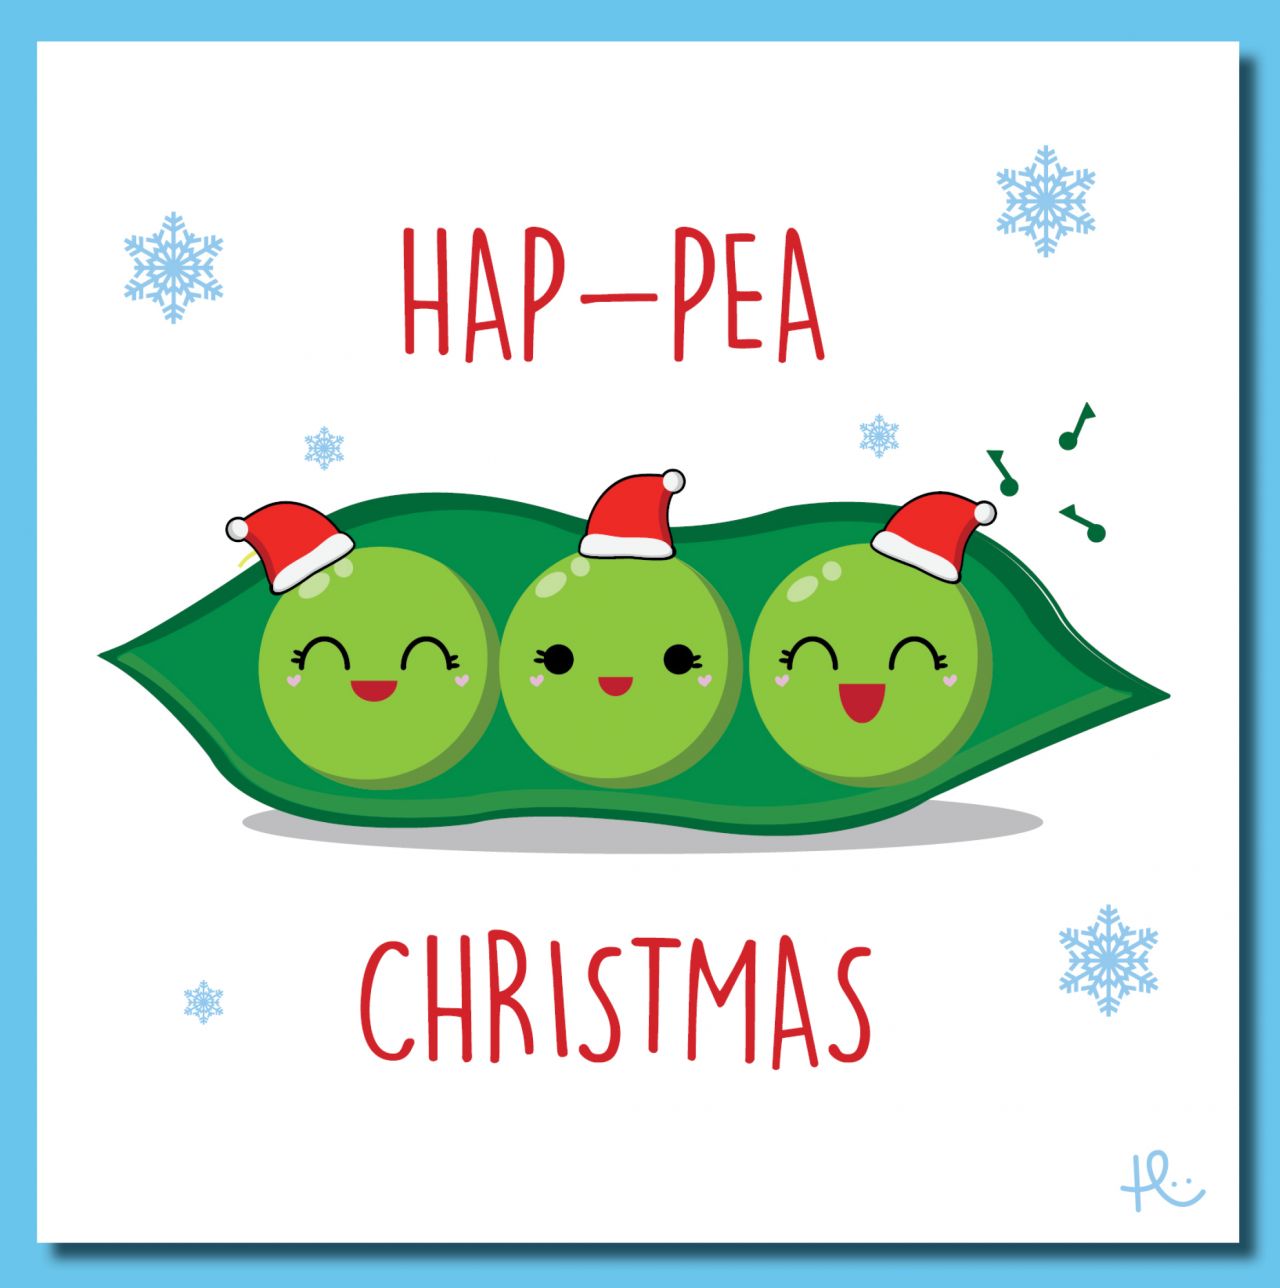 Hap-pea Christmas card idea